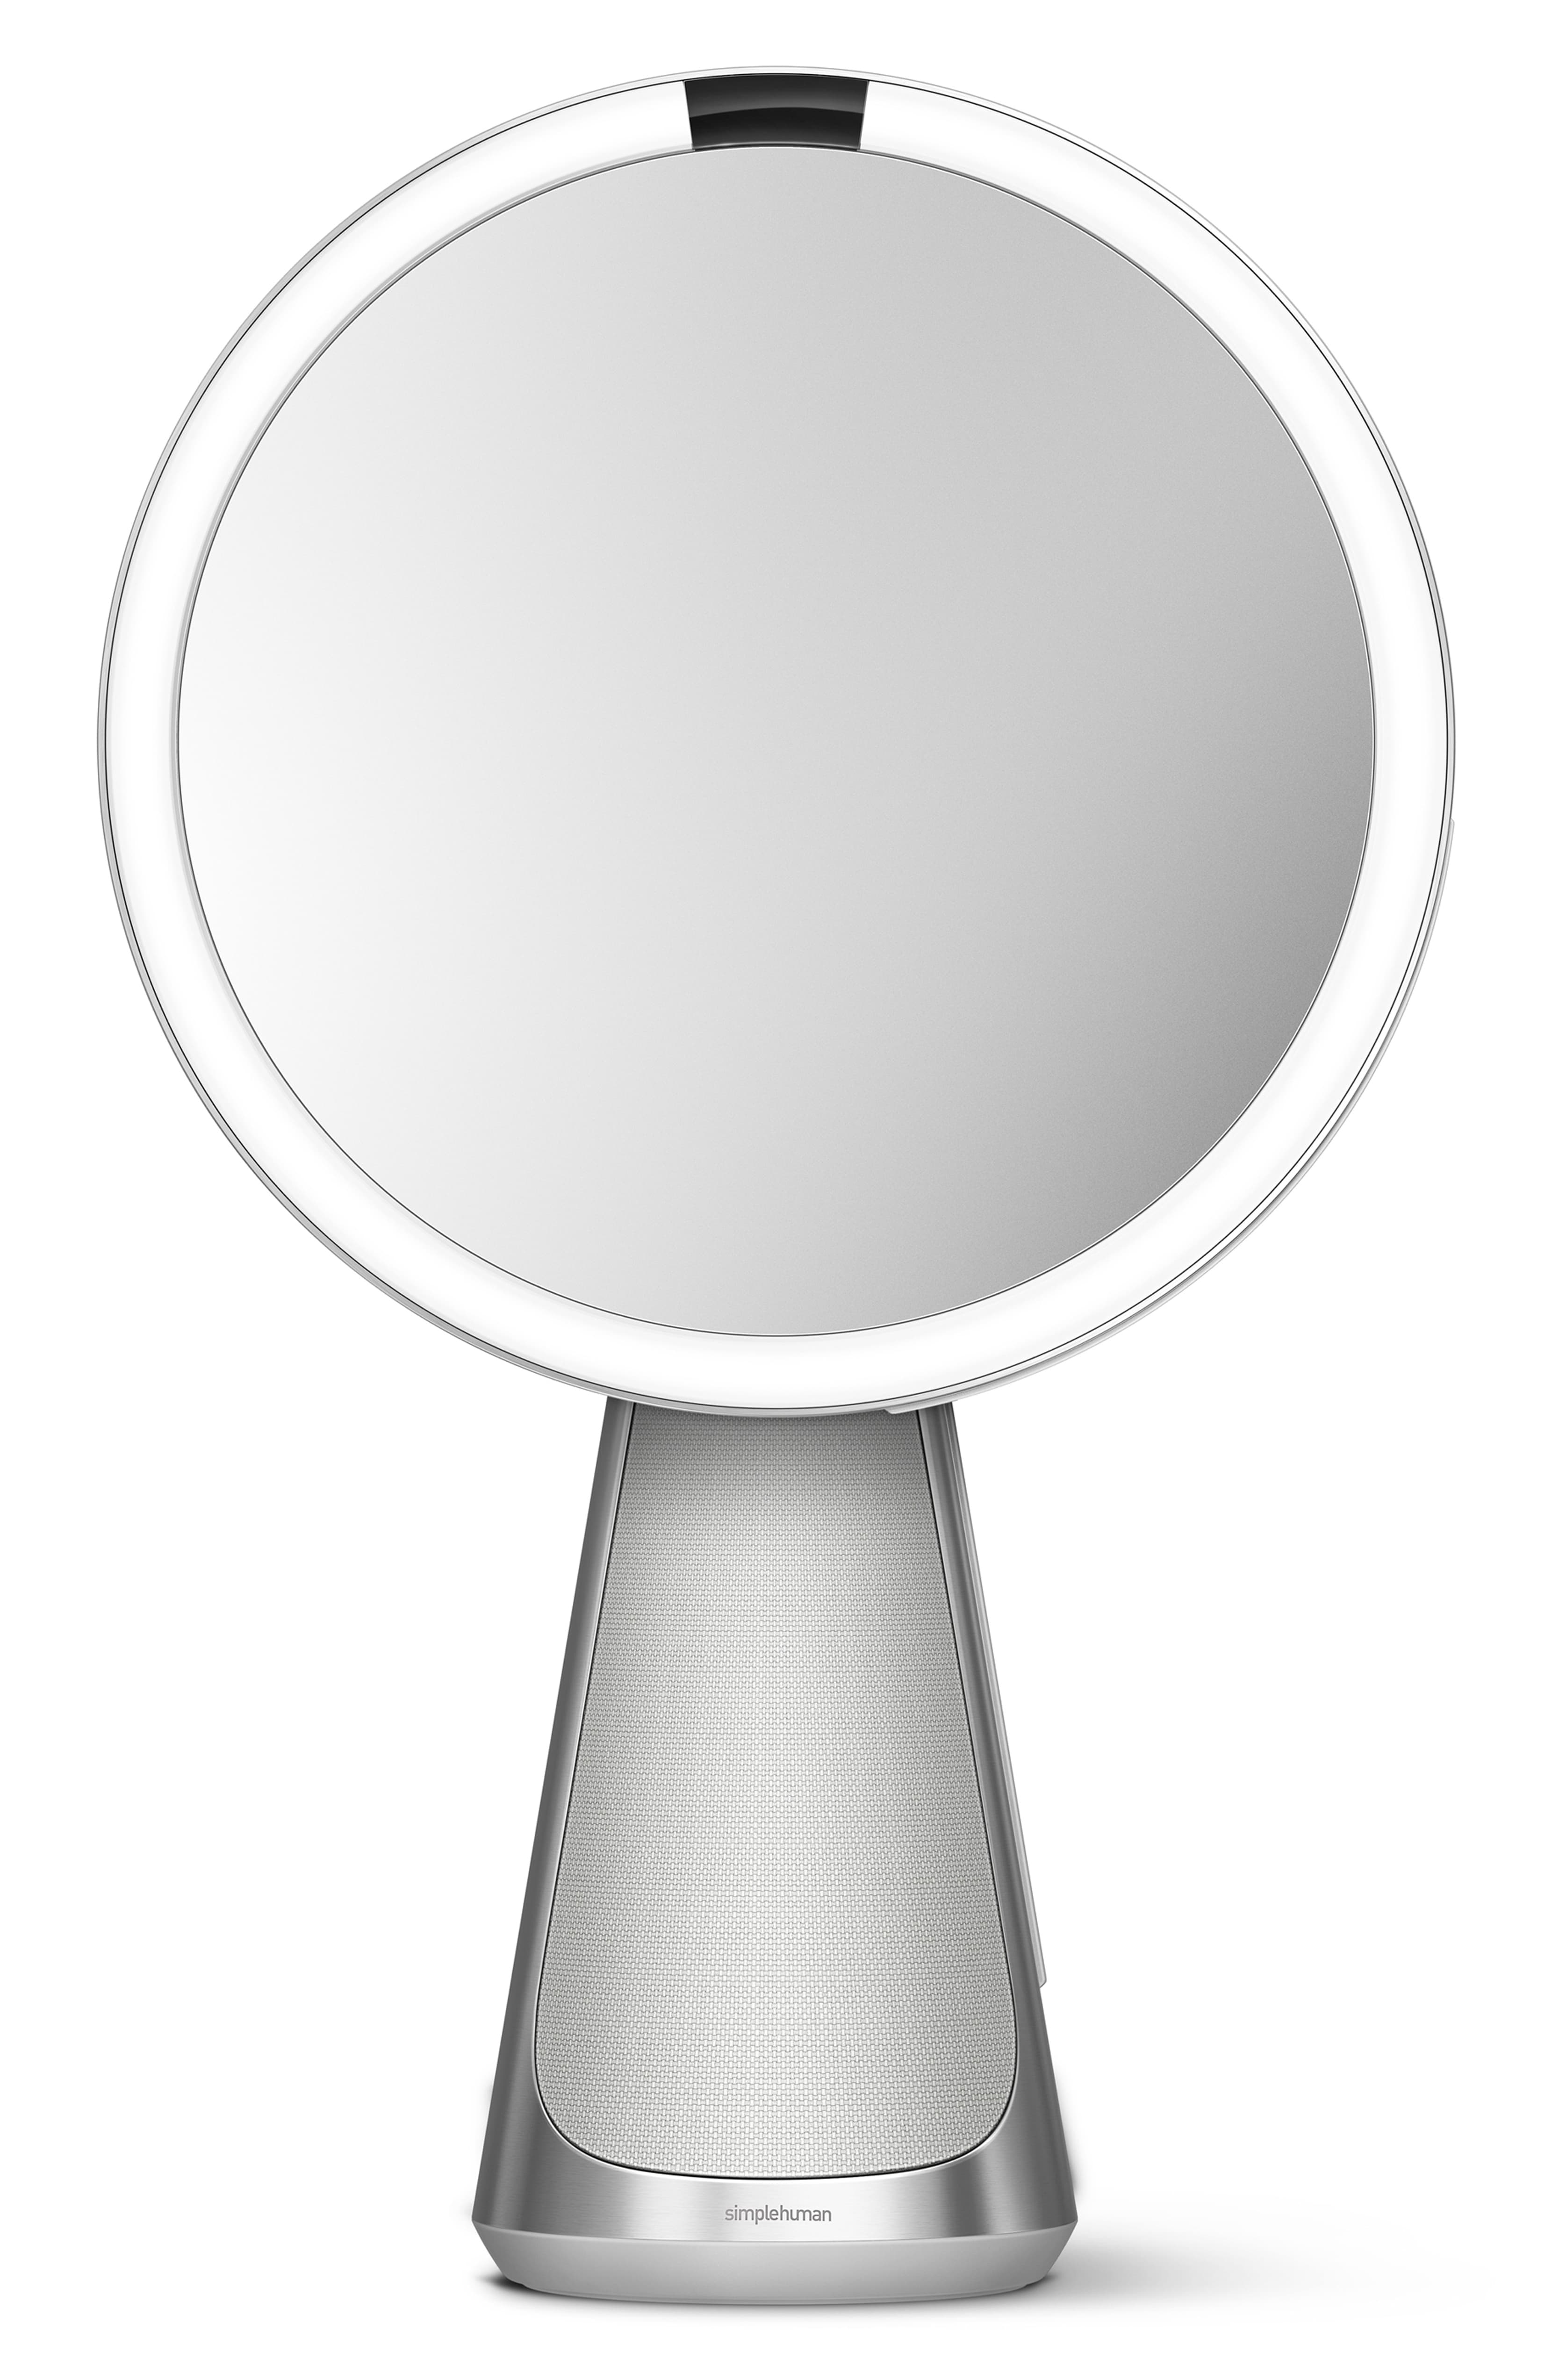 Simplehuman Sensor Mirror Hi-Fi Makeup Mirror